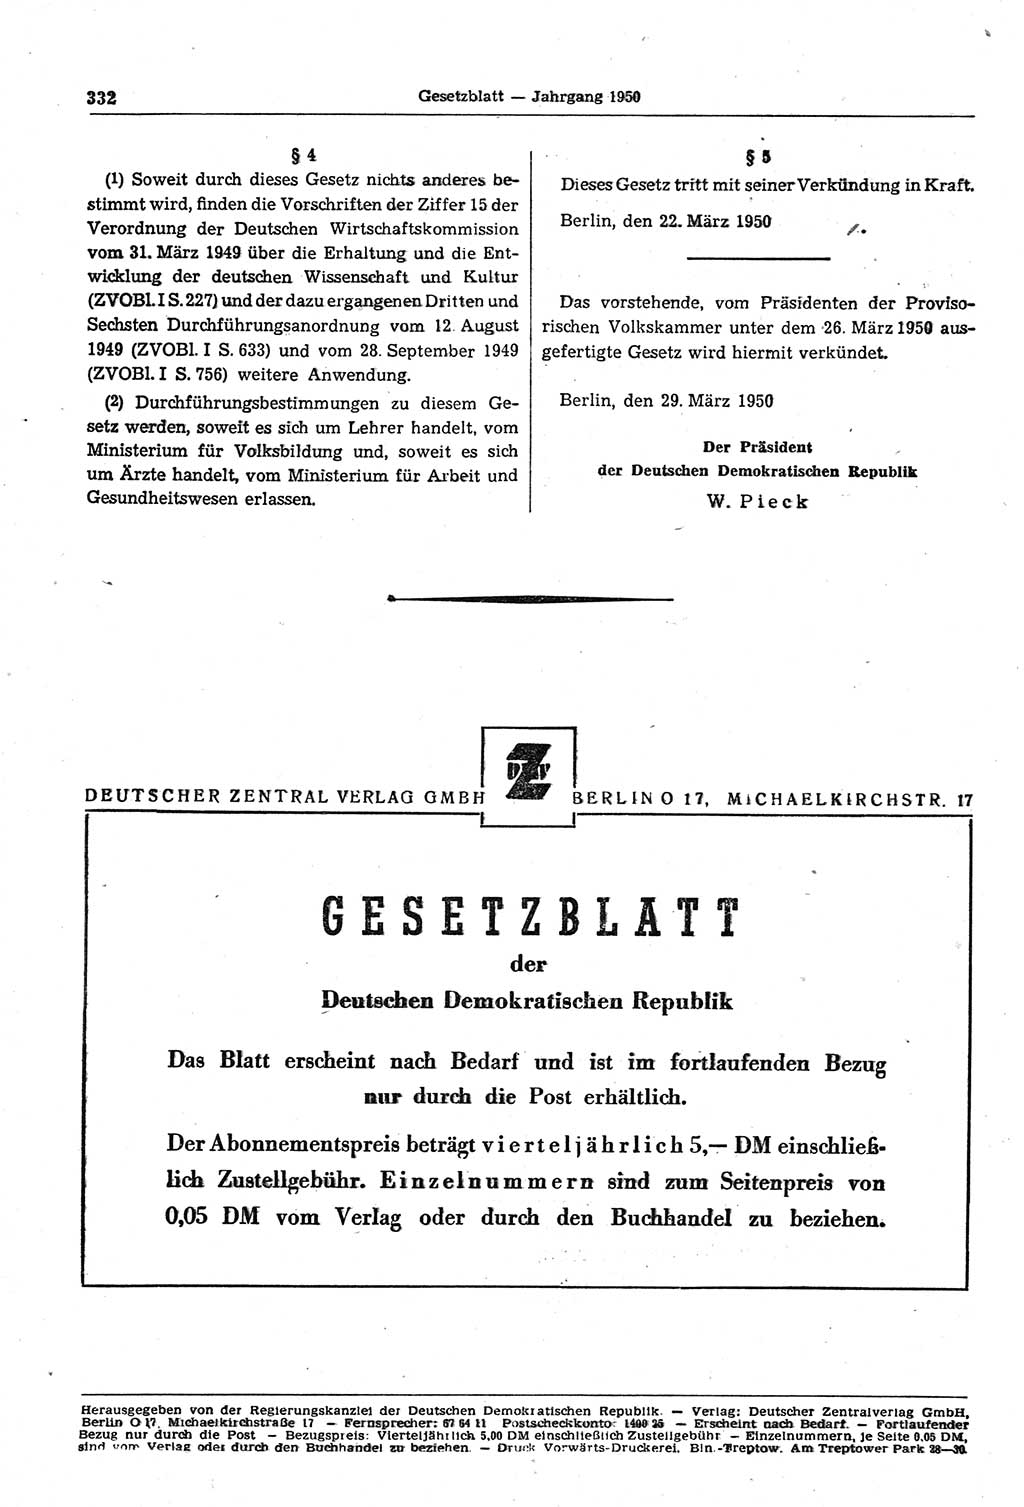 Gesetzblatt (GBl.) der Deutschen Demokratischen Republik (DDR) 1950, Seite 332 (GBl. DDR 1950, S. 332)